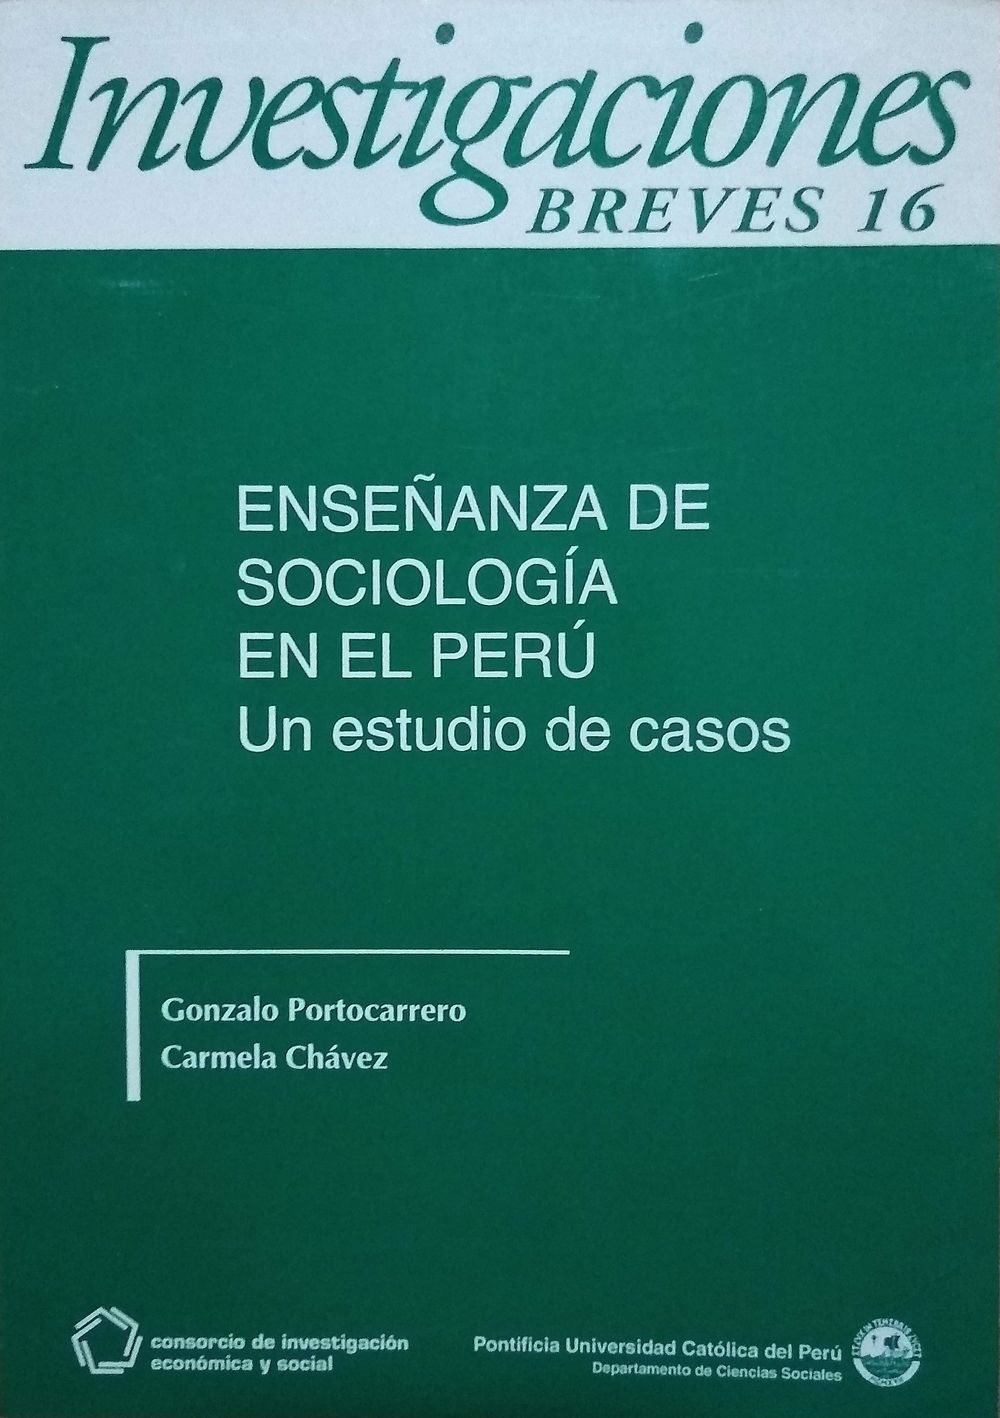 Enseñanza de Sociología en el Perú. Un estudio de casos